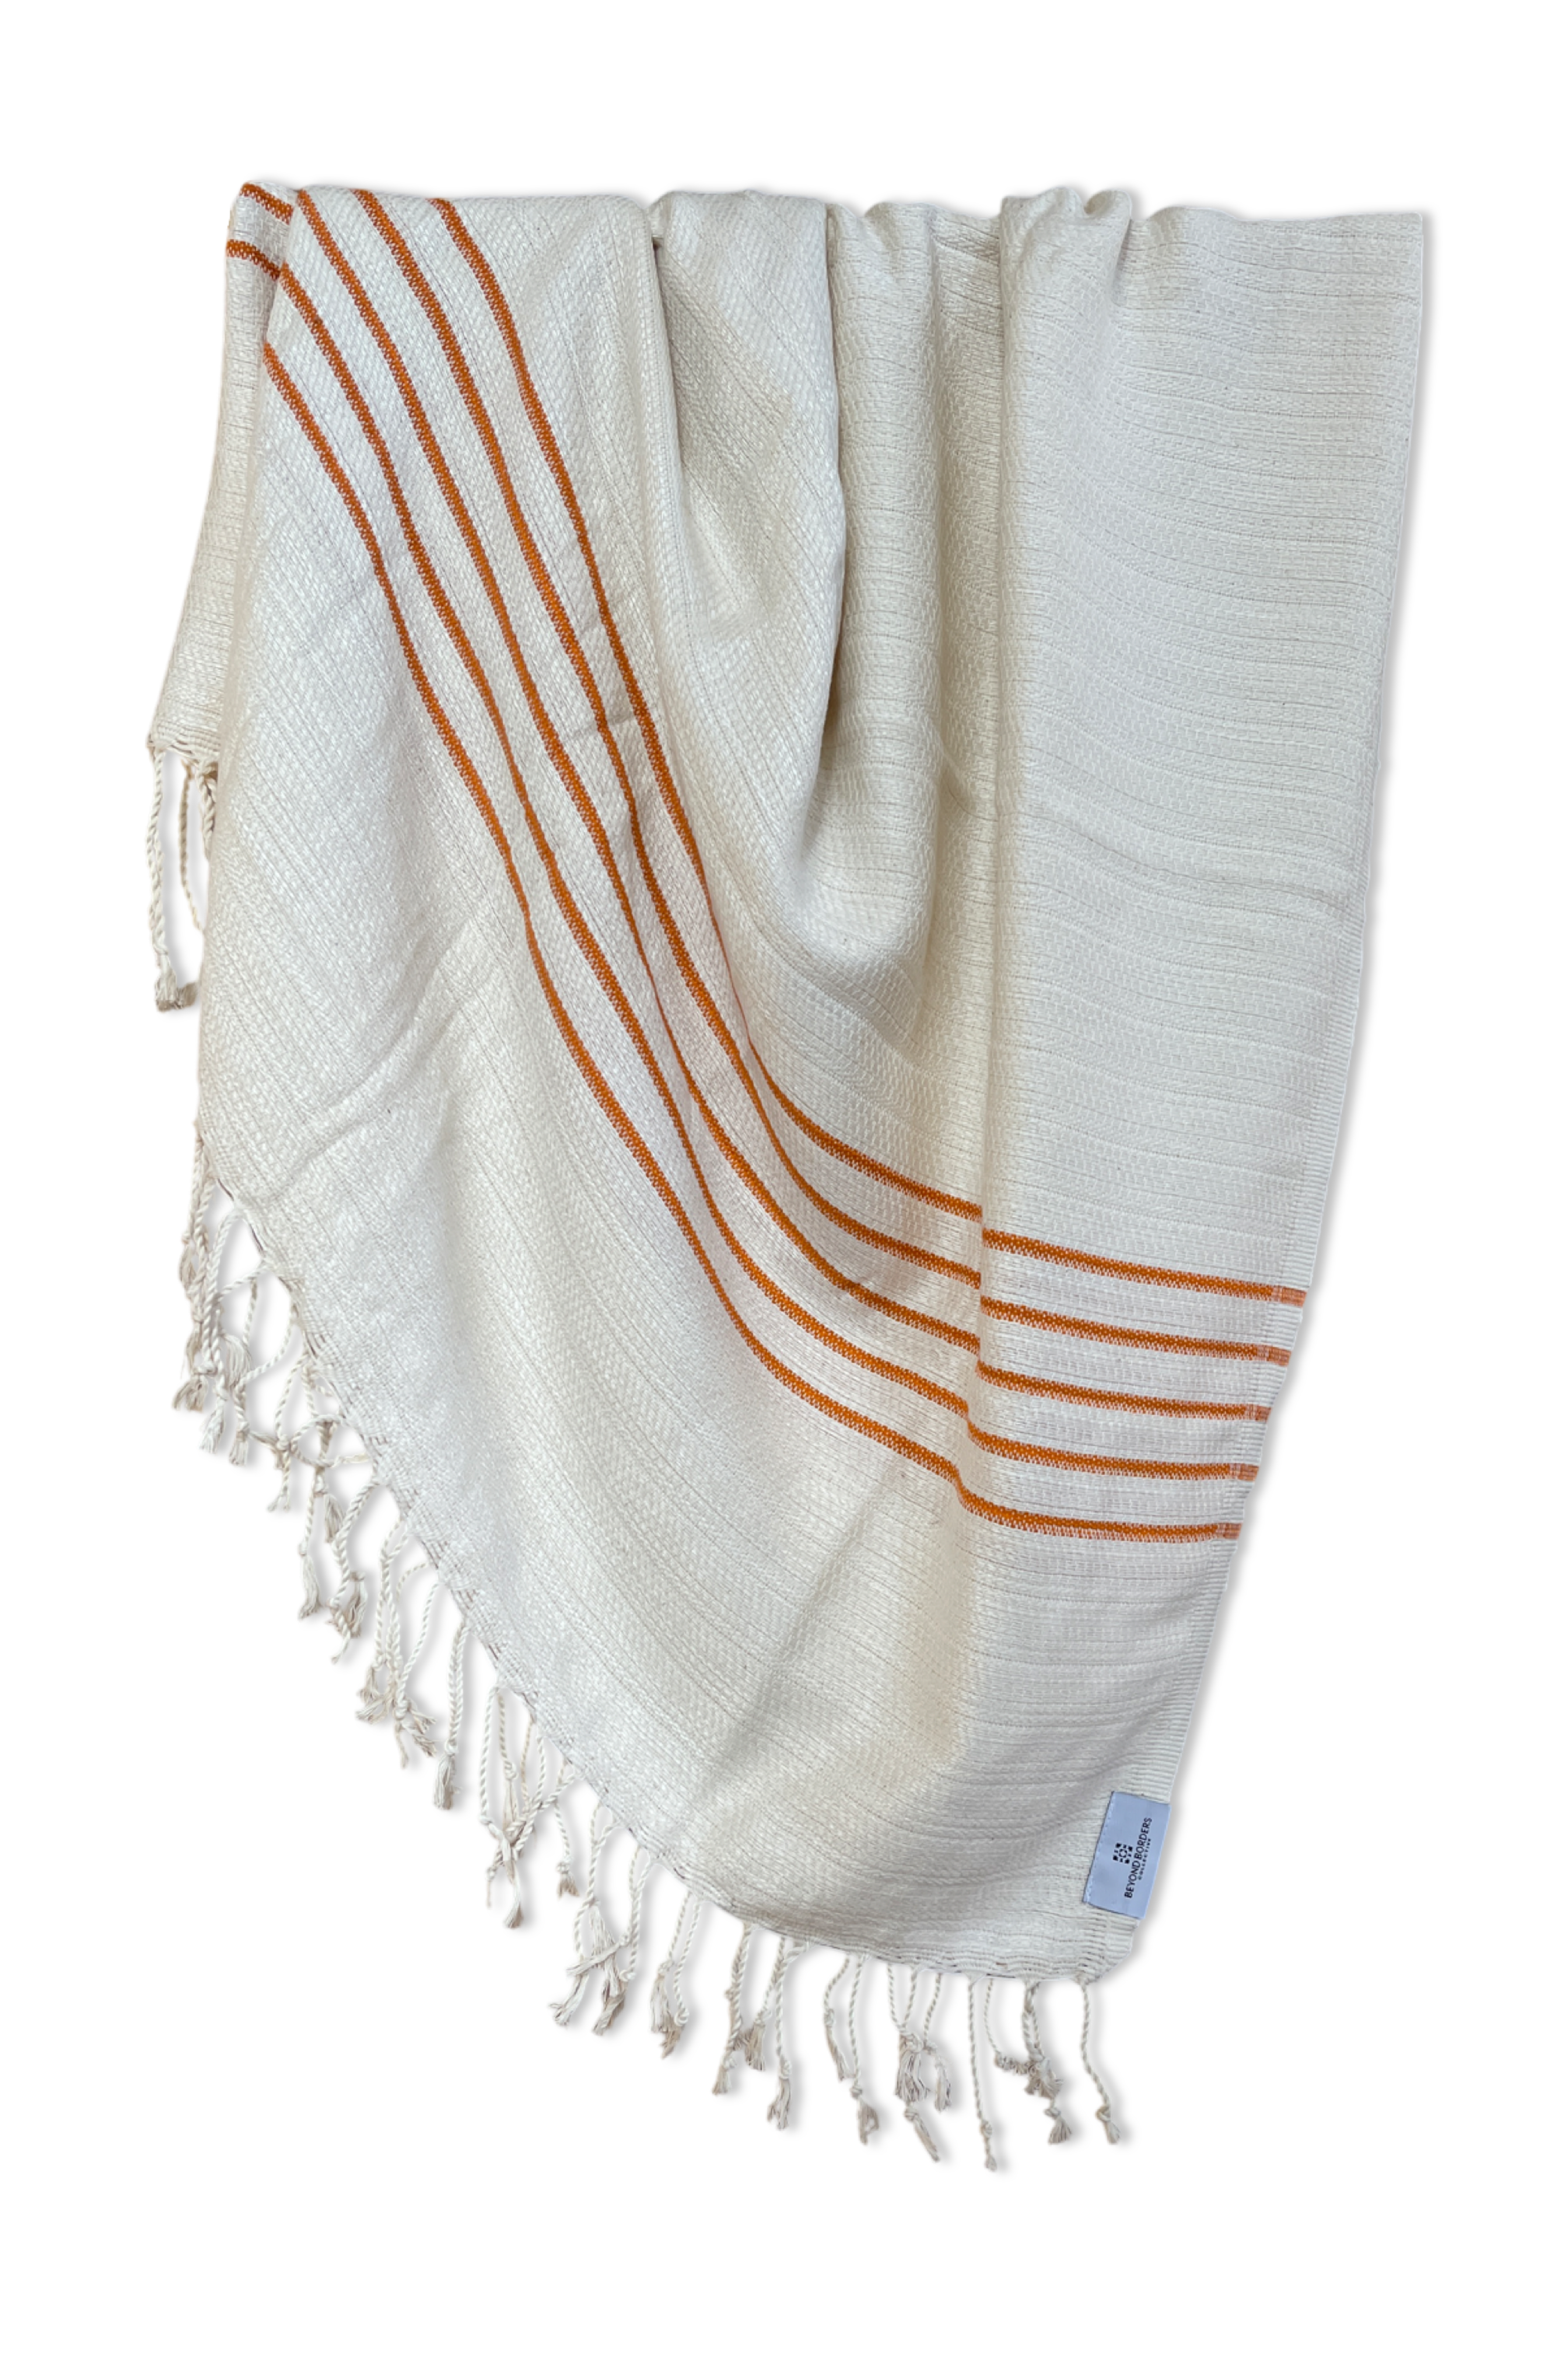 Cayir Turkish Cotton Towel / Throw